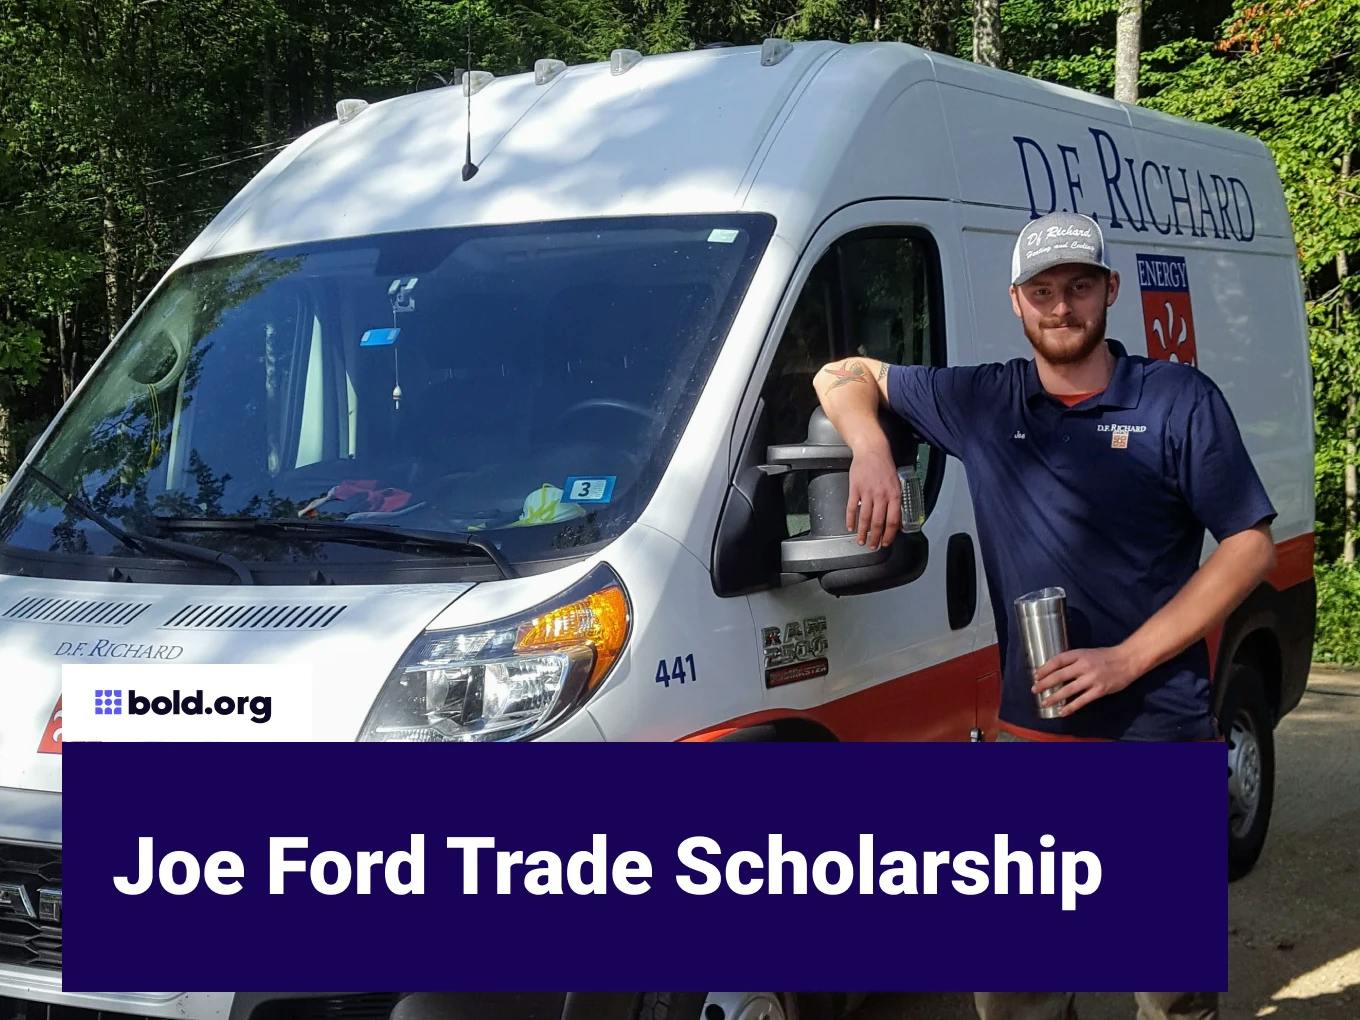 Joe Ford Trade Scholarship